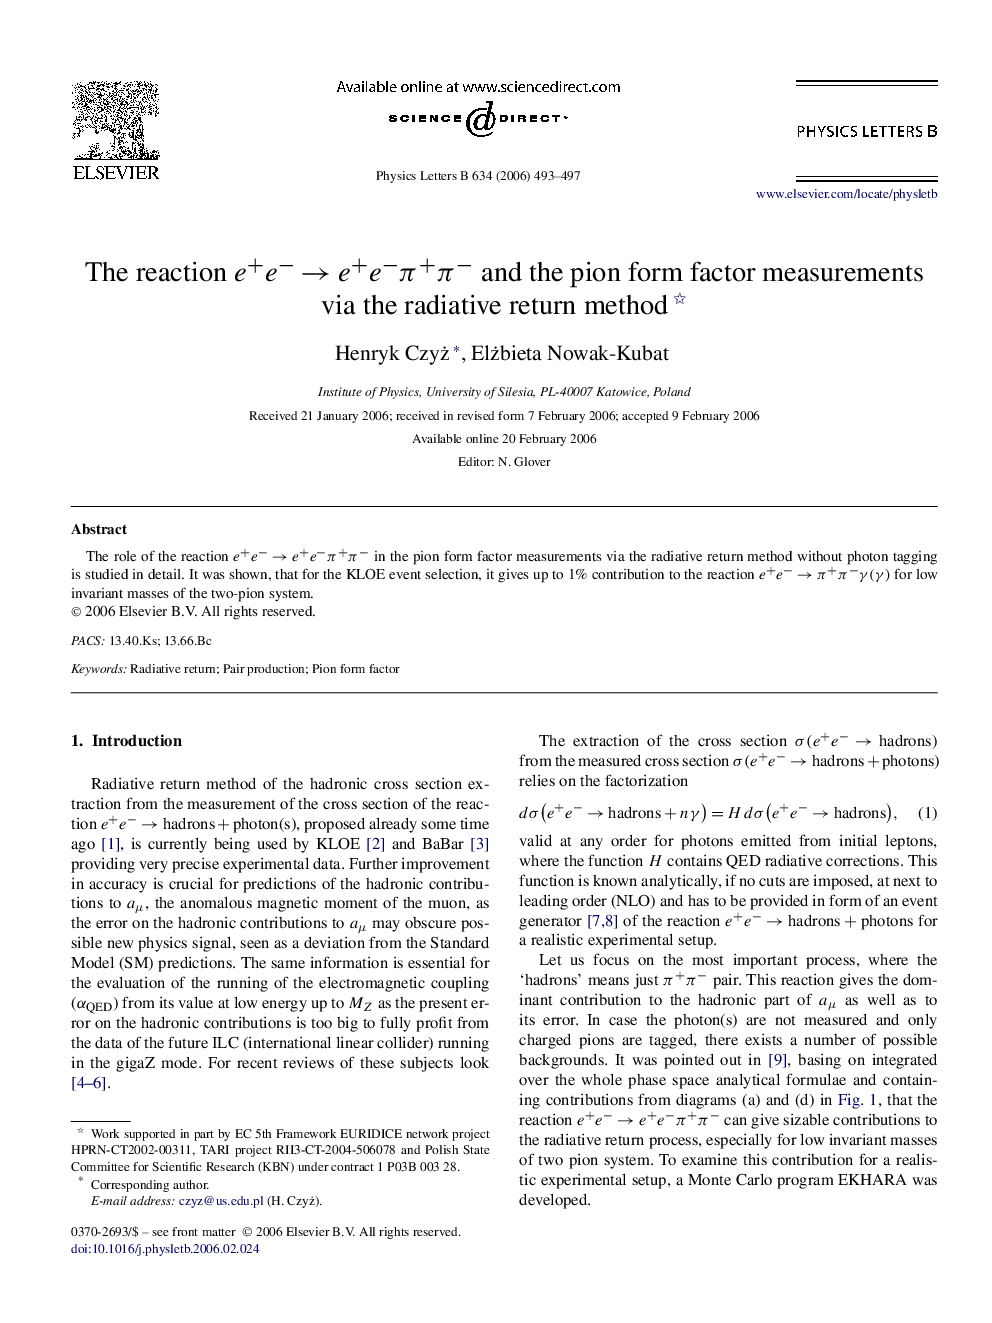 The reaction e+eââe+eâÏ+Ïâ and the pion form factor measurements via the radiative return method